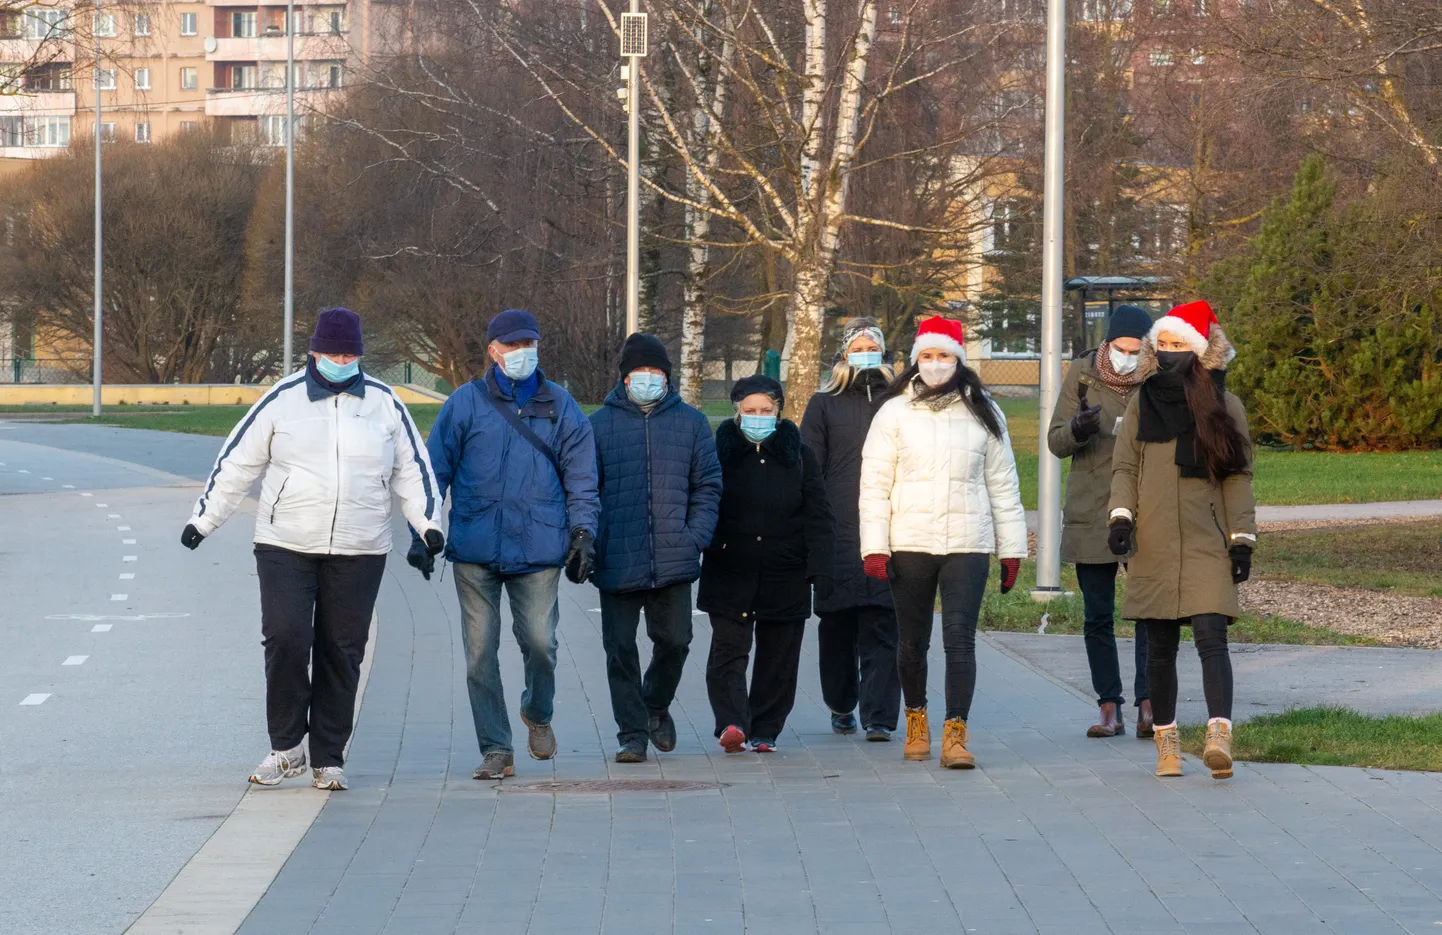 Tartu linn kutsus eakate kõnniringid ellu 2020. aasta lõpus, et vähendada inimeste üksildustunnet pühadeaegsel perioodil.